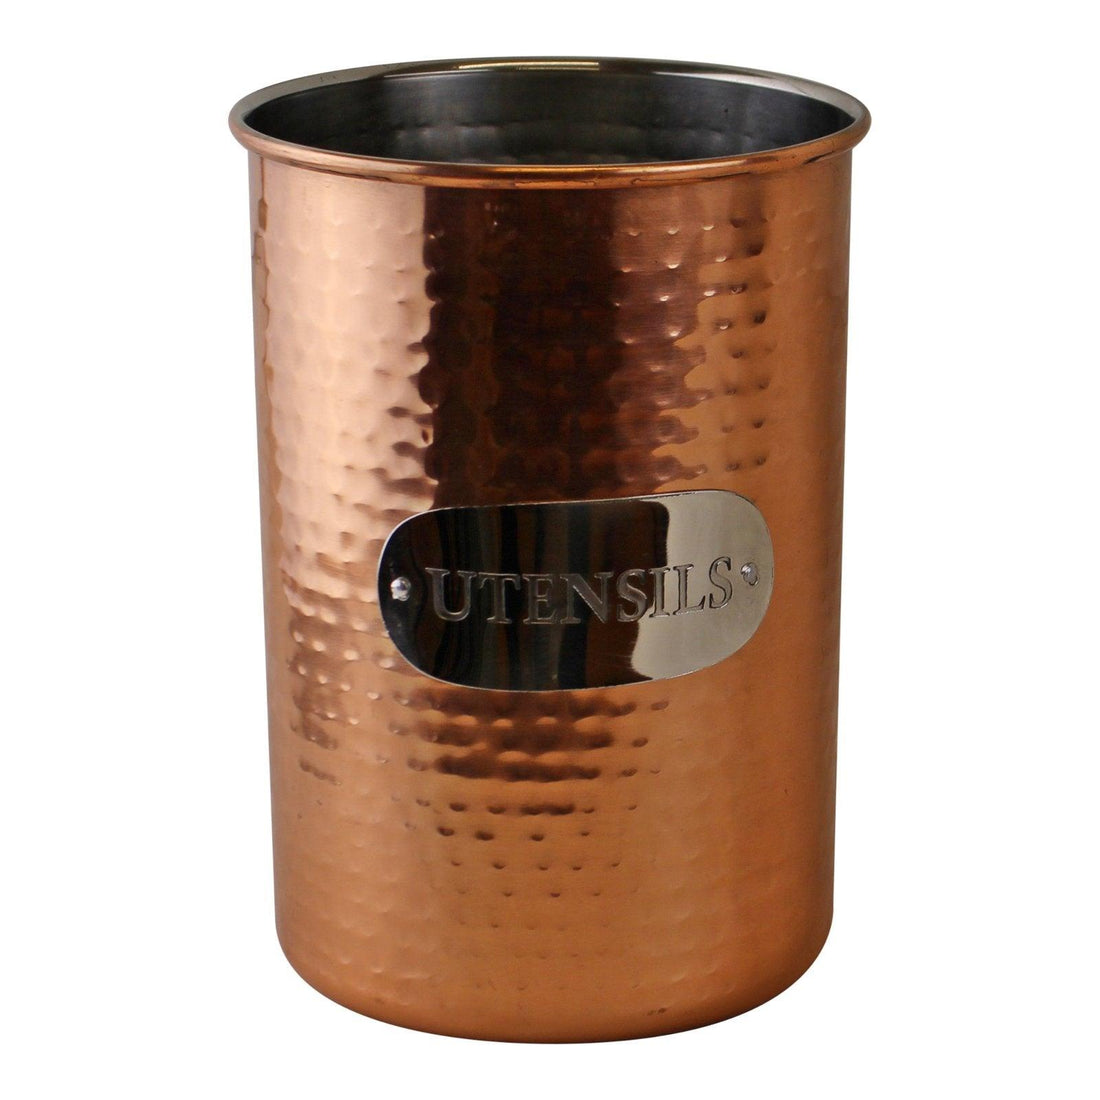 Hammered Copper Utensil Holder - £20.99 - Kitchen Storage 